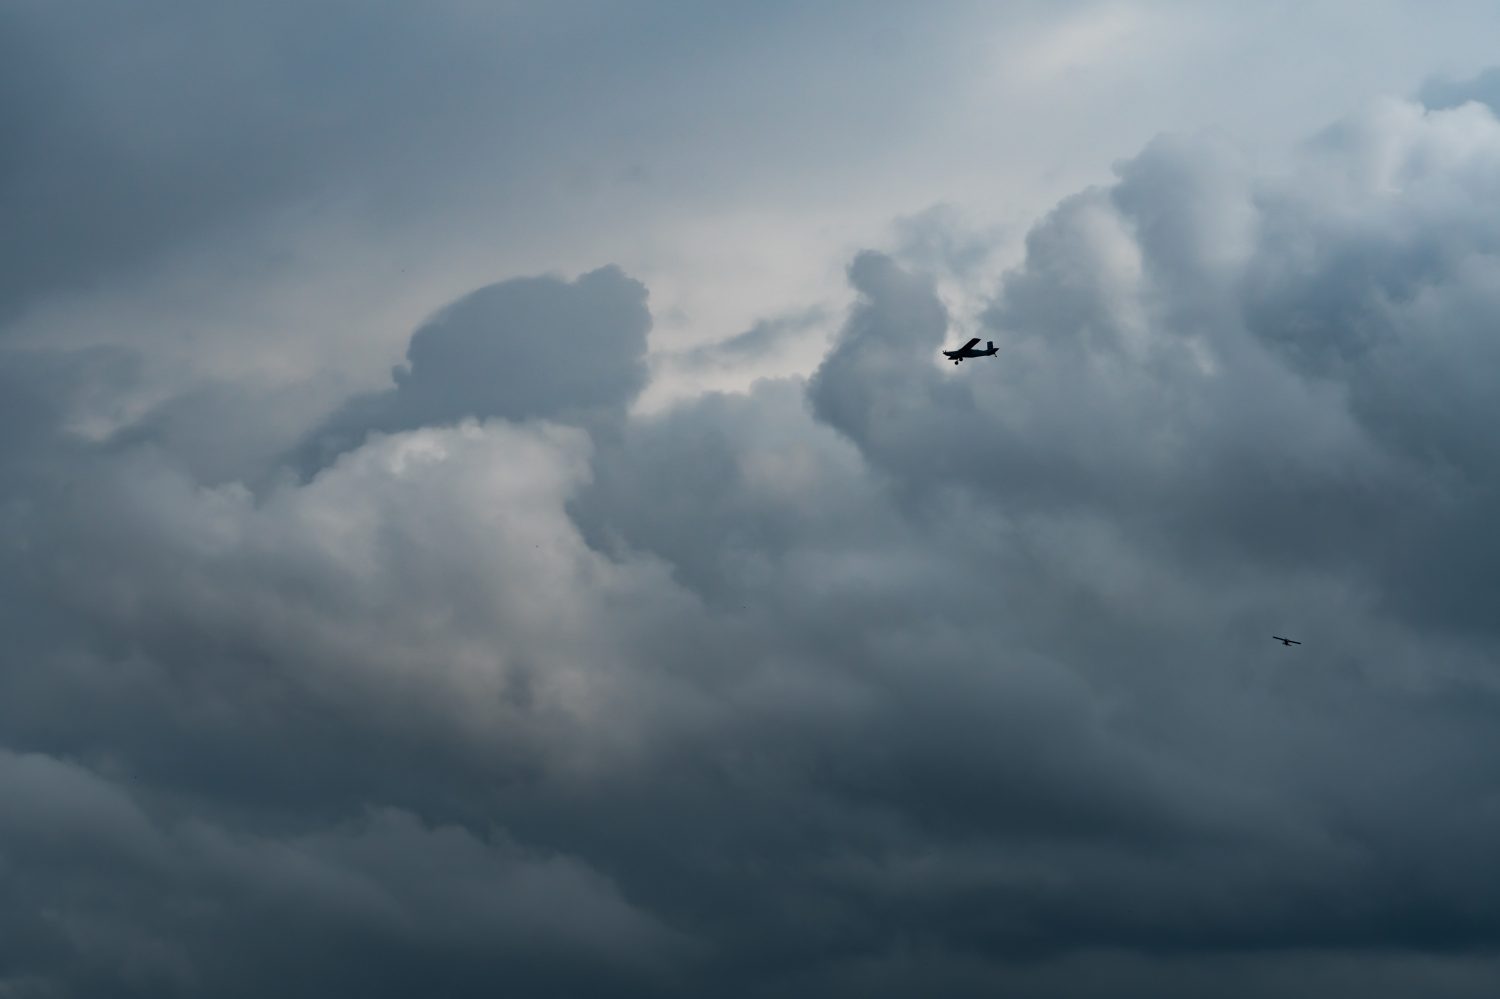 Piccolo aereo nel cielo nuvoloso per la produzione di pioggia.  Nuvole bianche e soffici con piccoli aerei per produrre piogge artificiali.  Due aerei che volano sul cielo nuvoloso.  Aereo agricolo per precipitazioni artificiali.